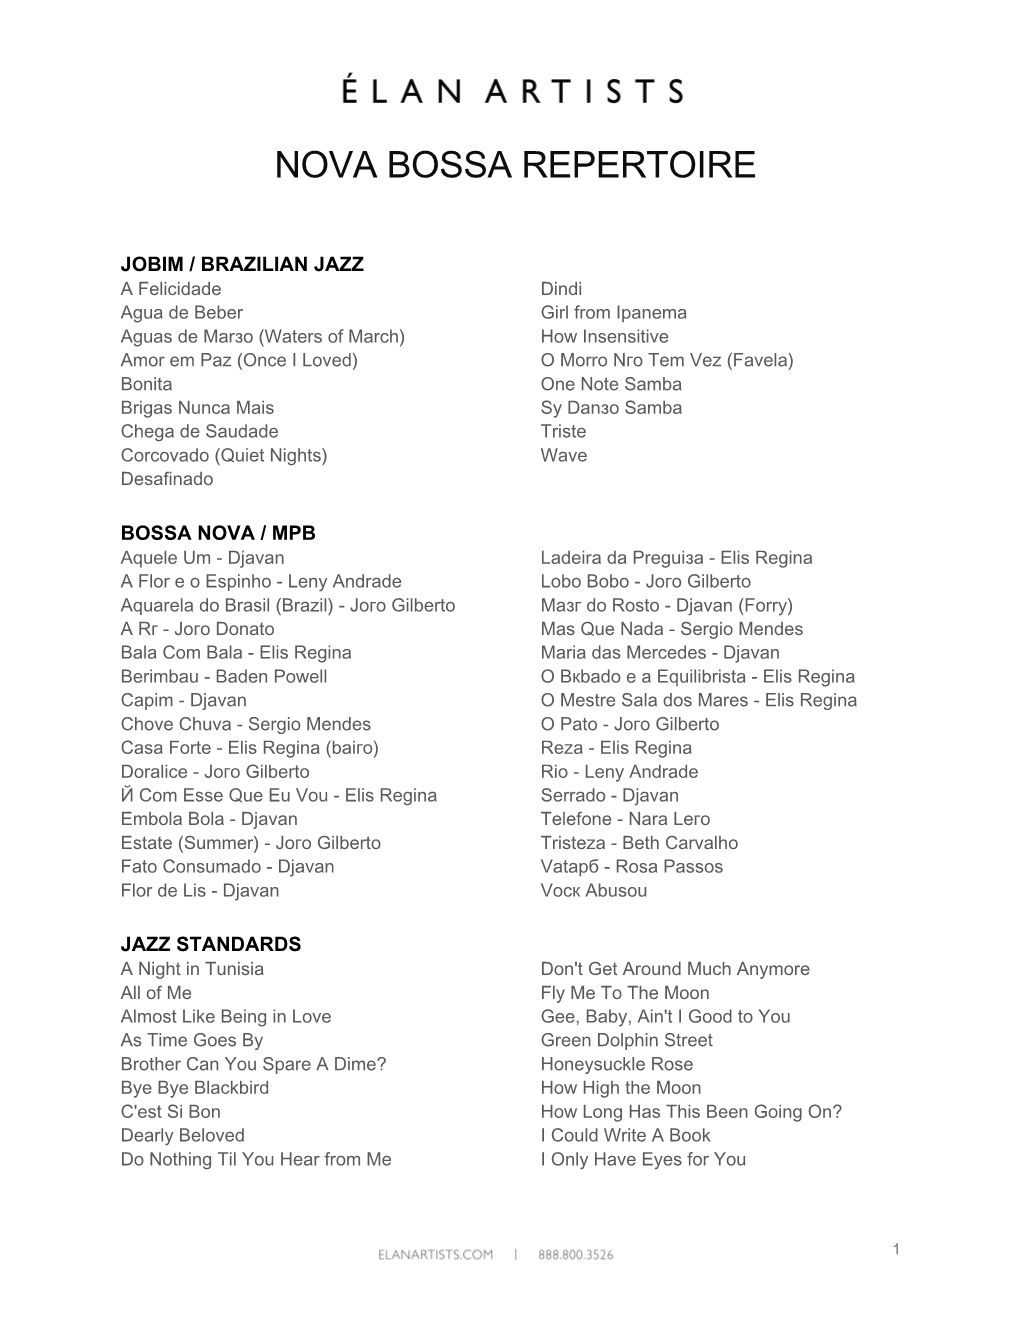 Nova Bossa Repertoire